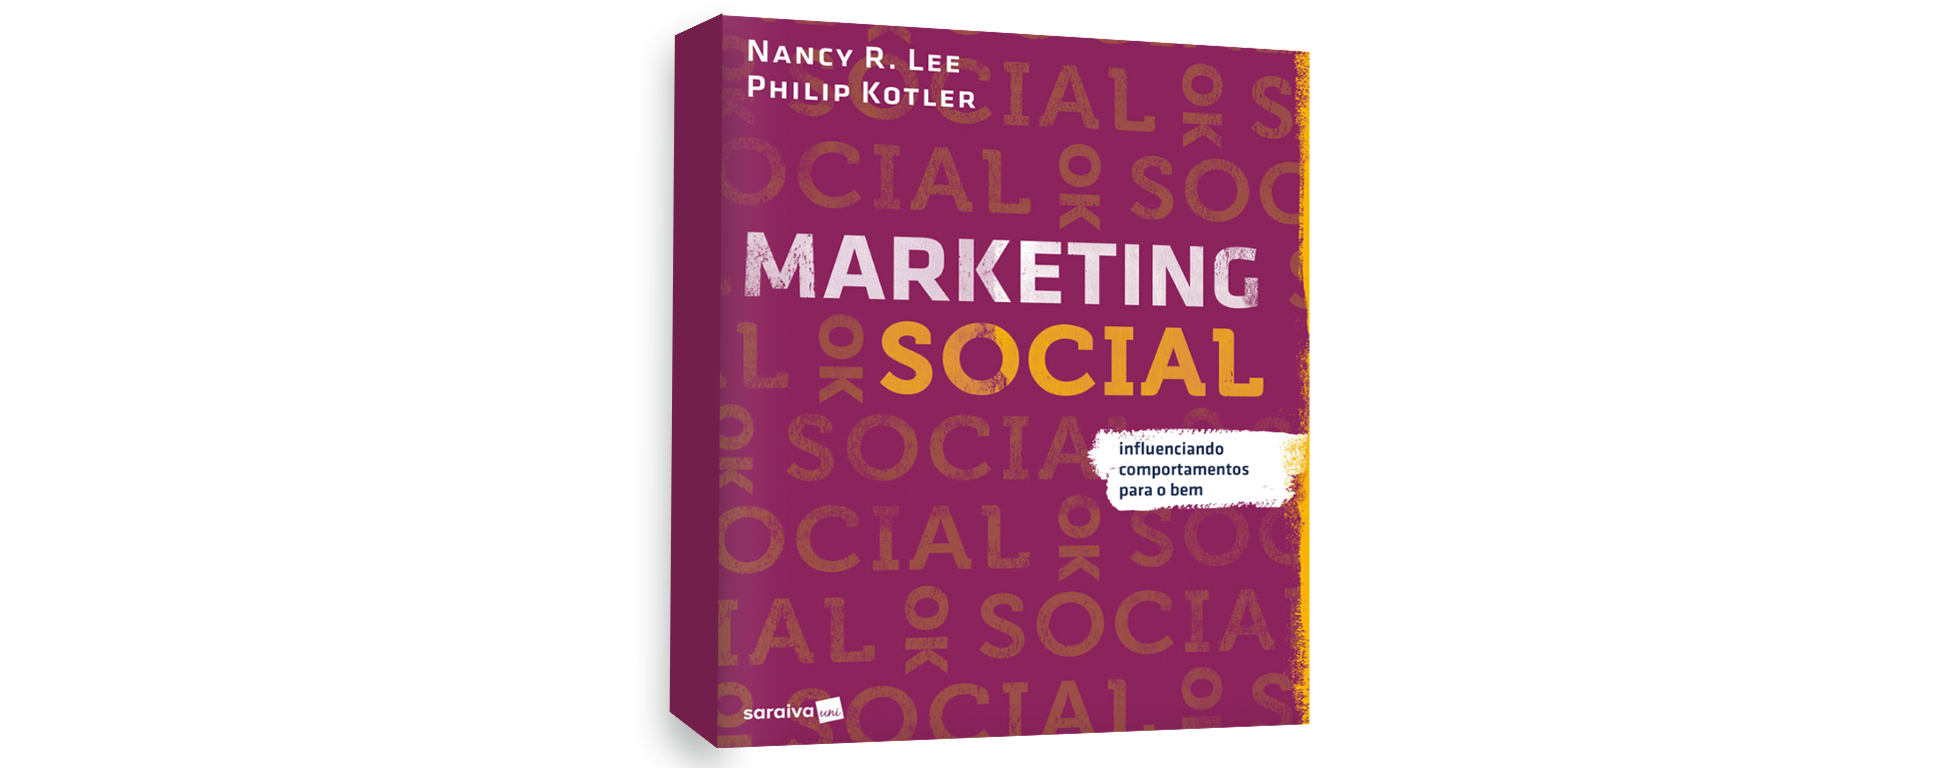 Philip Kotler, maior referência em marketing no mundo, lança o livro Marketing Social no Brasil. E adivinha: nós estamos nele!